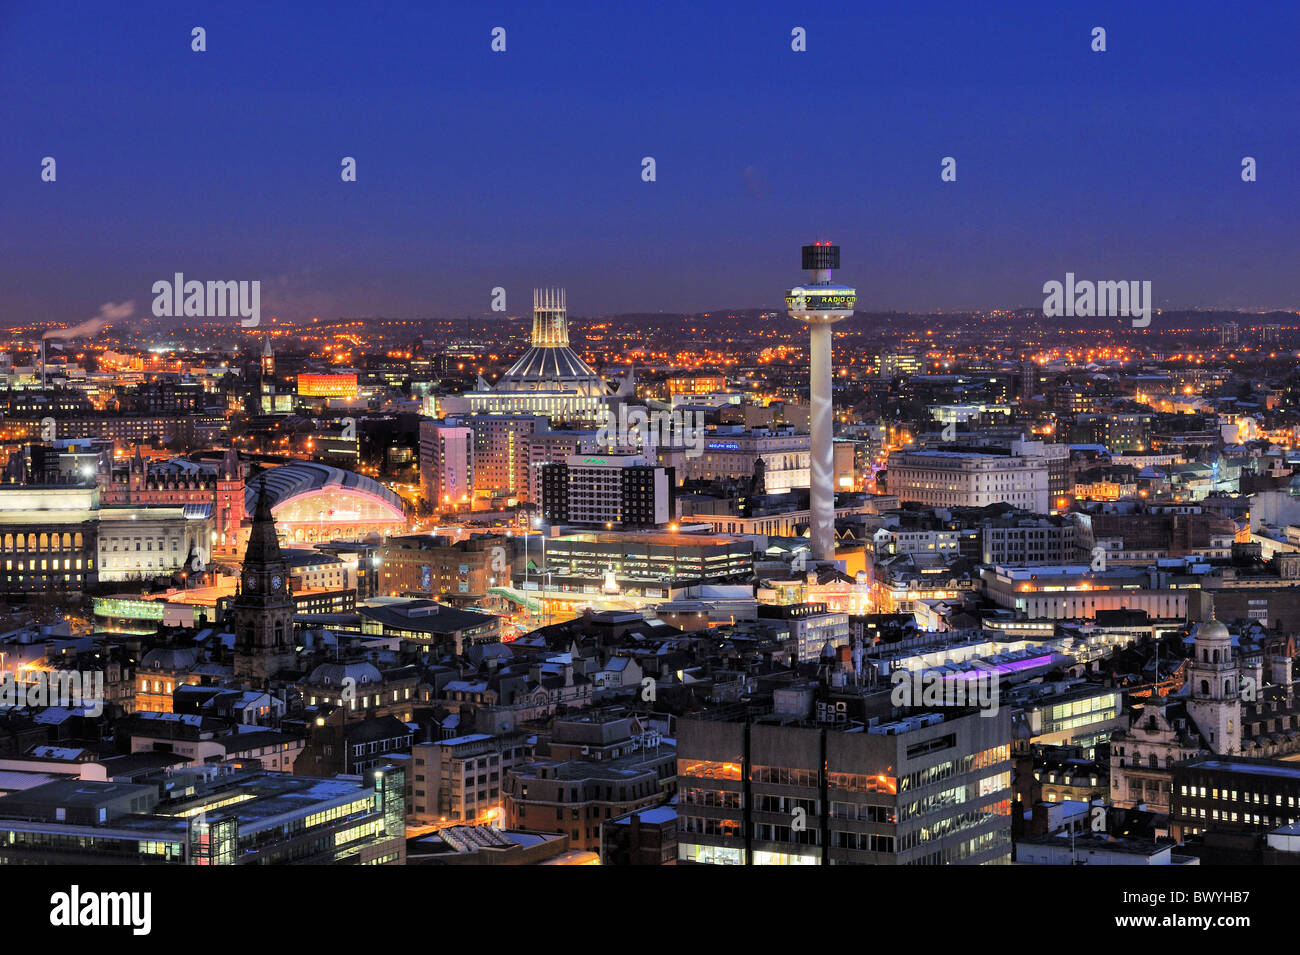 Il centro di Liverpool di notte mostra stazione di Lime Street, Liverpool Metropolitan Cathedral e Radio City Tower. Foto Stock